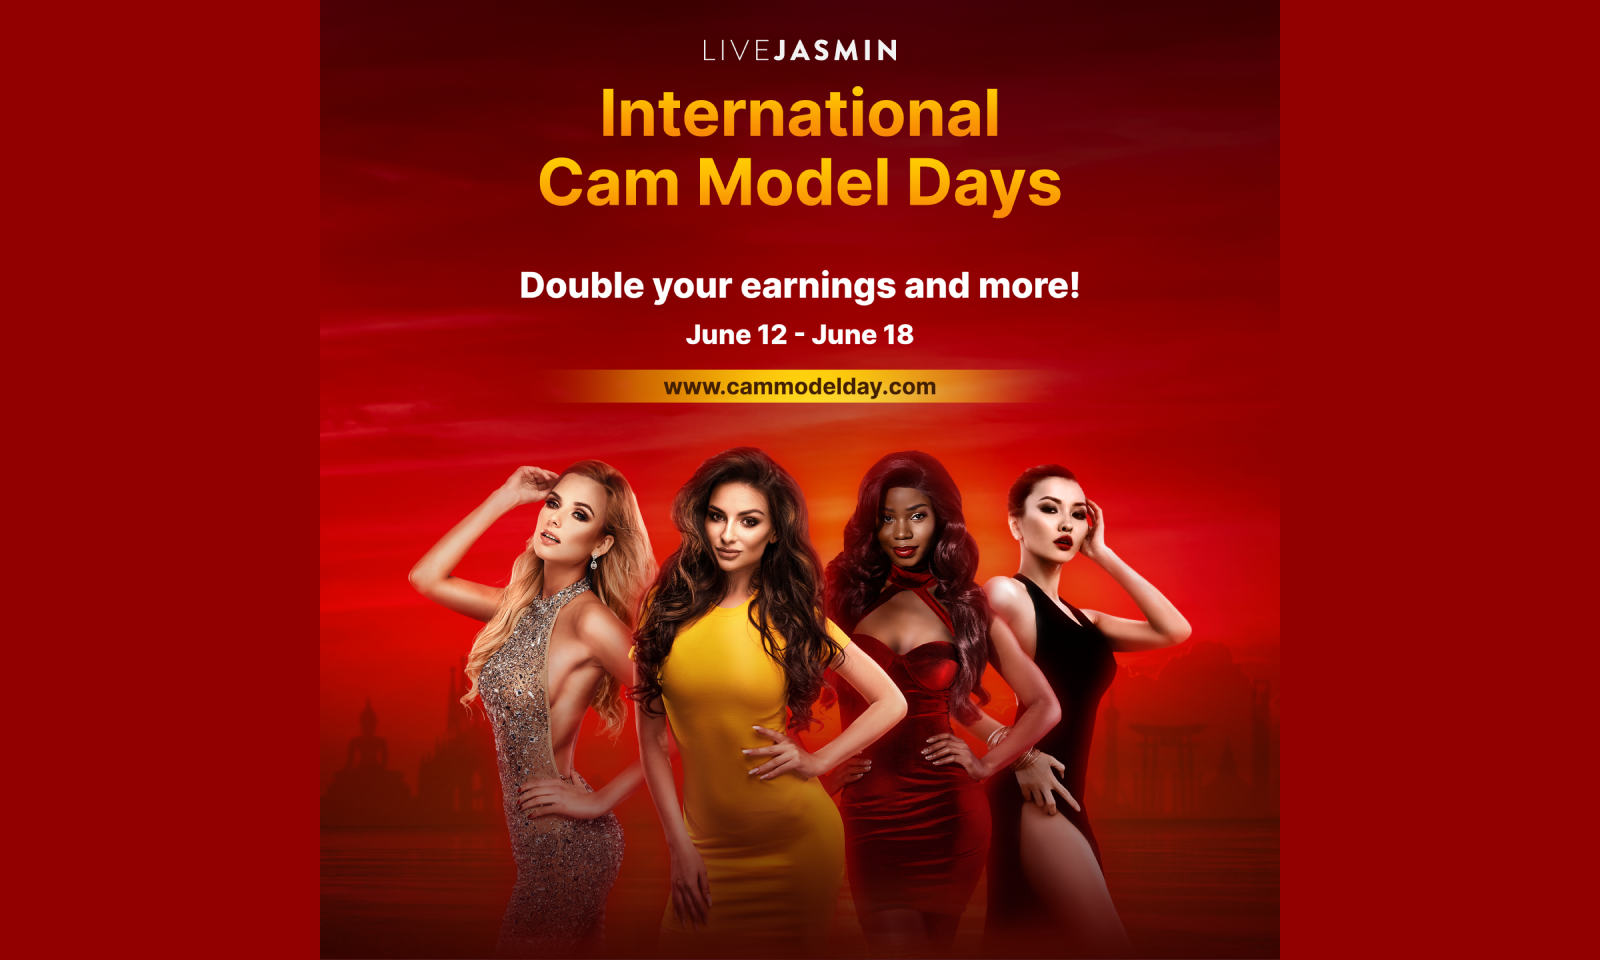 LiveJasmin Announces Bonus for International Cam Model Day